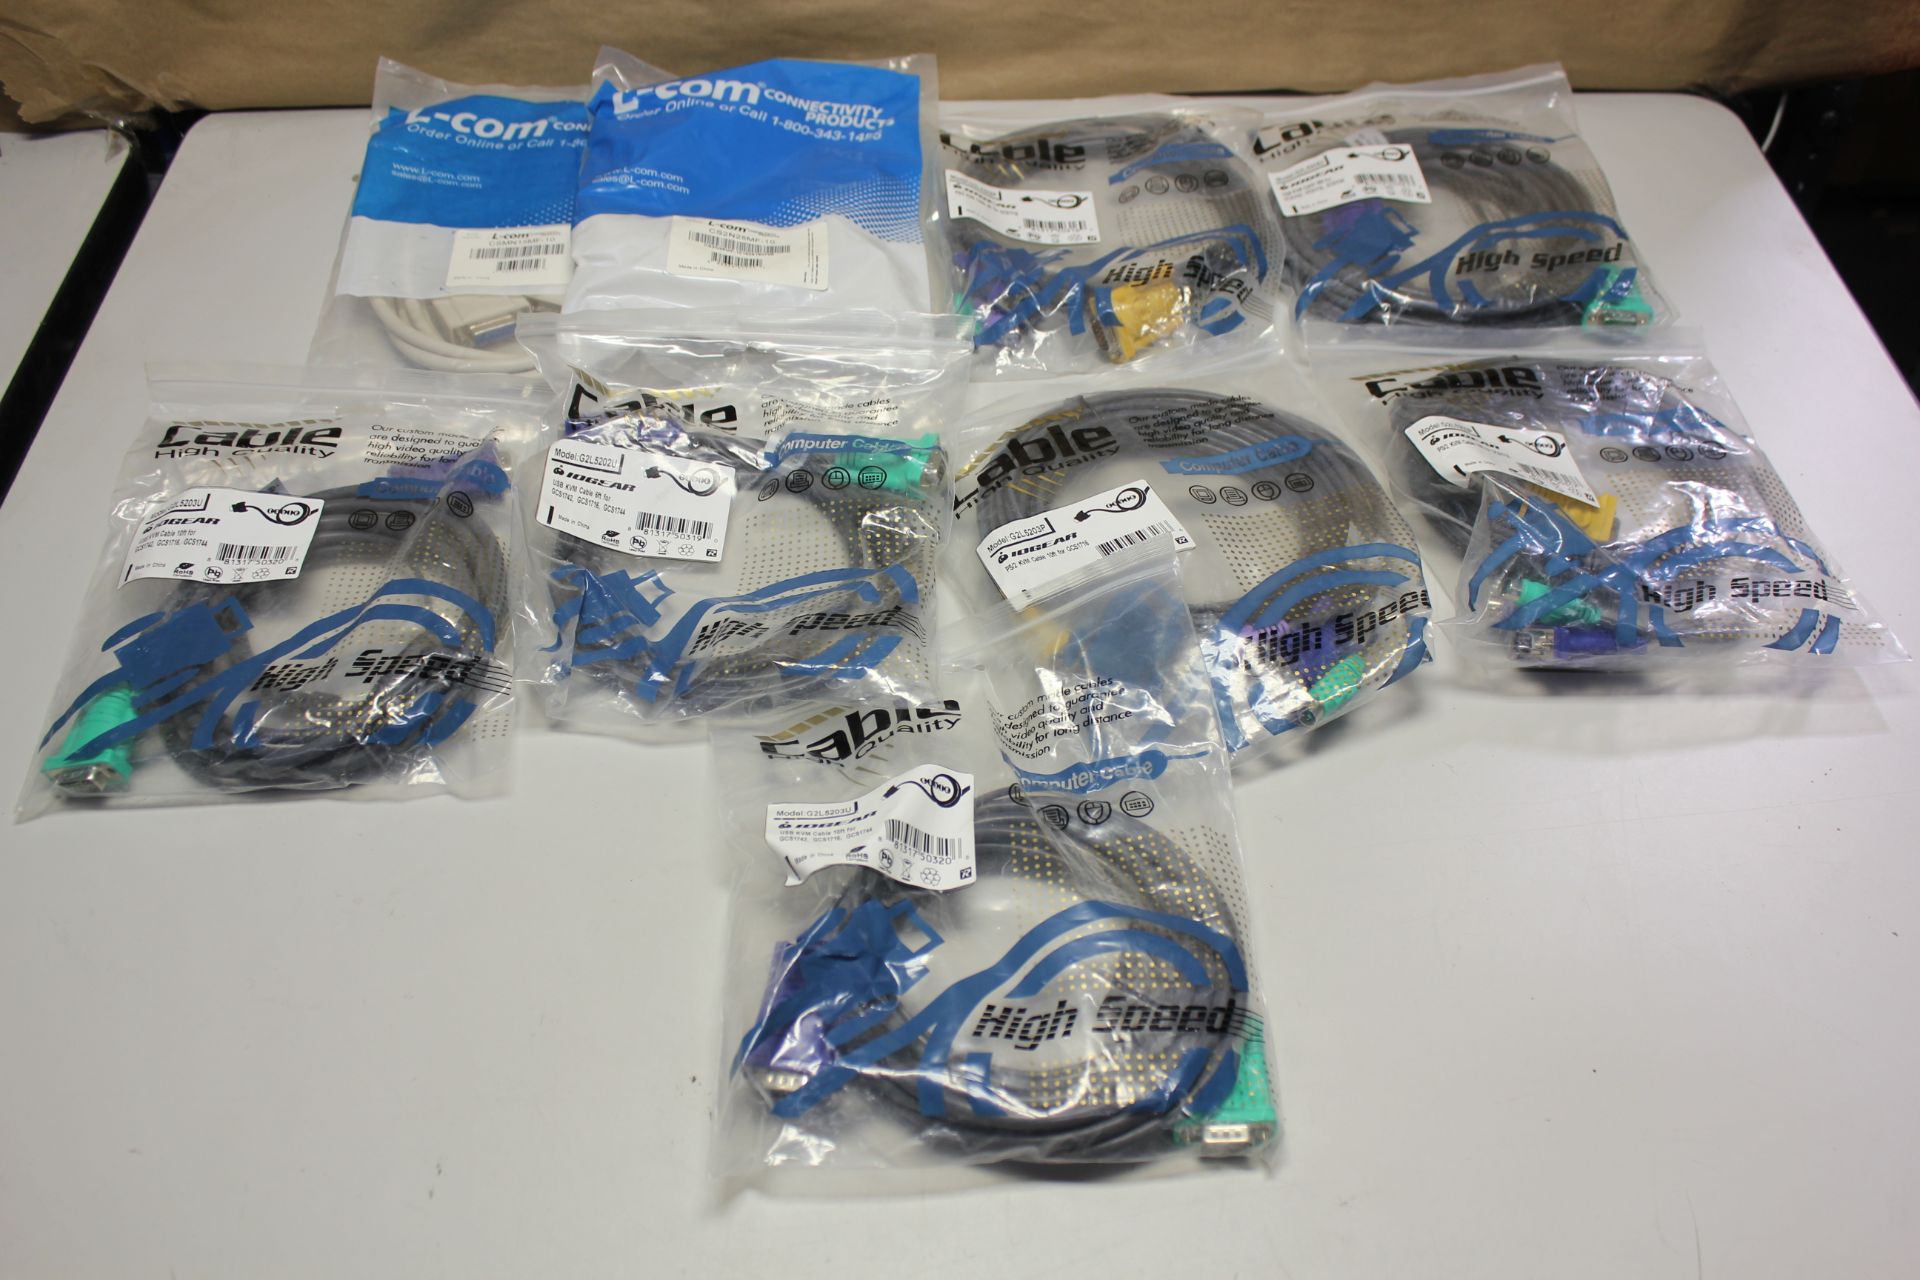 LOT OF NEW CABLES USB, KVM, PS2